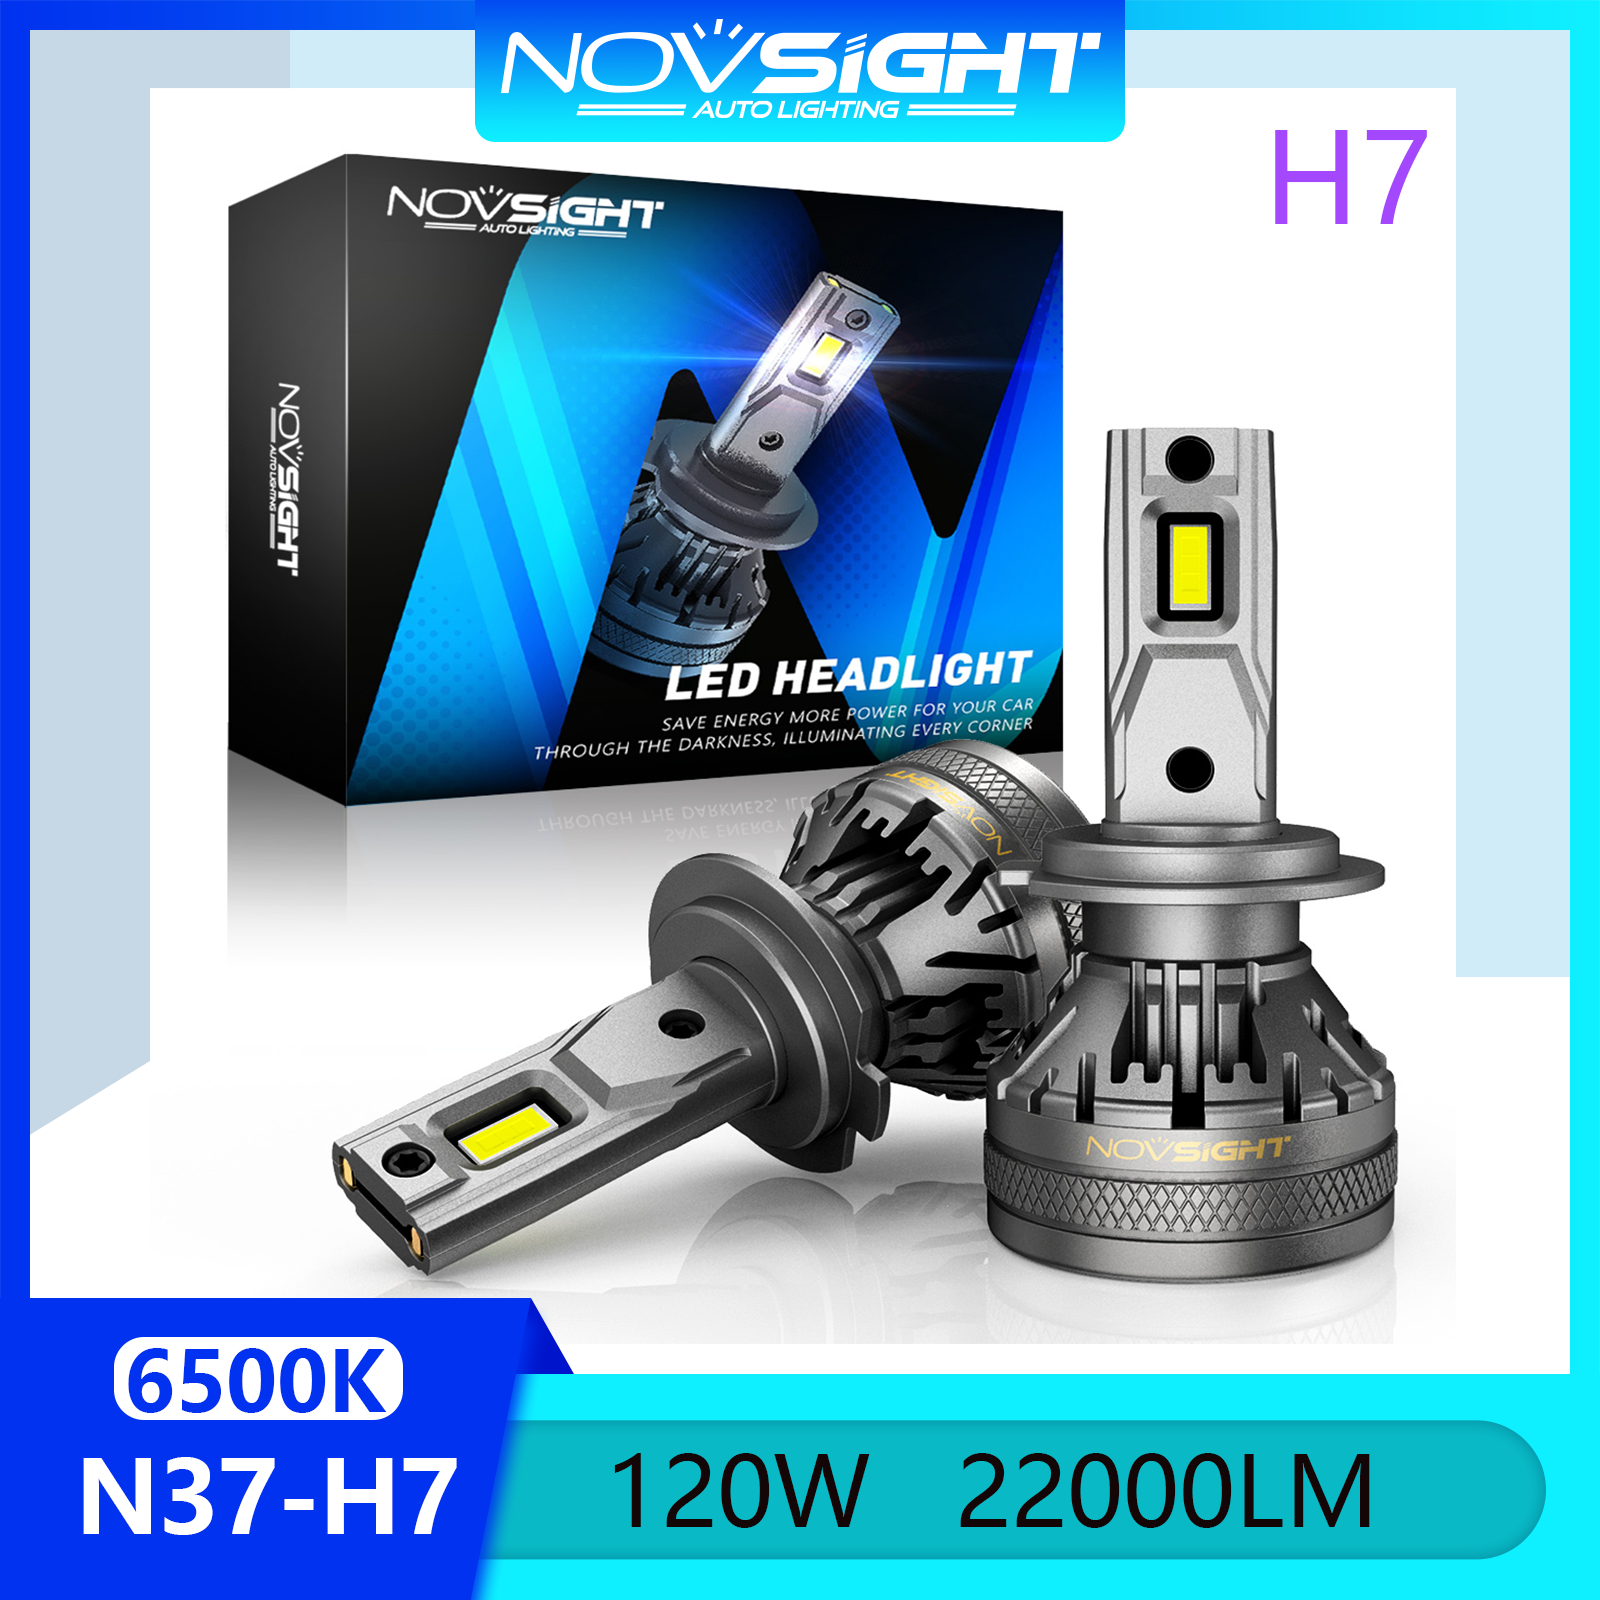 Novsight N37 6500K Đèn LED siêu sáng H7 Đèn pha LED Bộ đèn pha Đèn sương mù Chùm sáng cao / thấp 120W 22000LM Cắm và chạy Trong kho 1 cặp 2PCS Bảo hành 2 năm Miễn phí vận chuyển